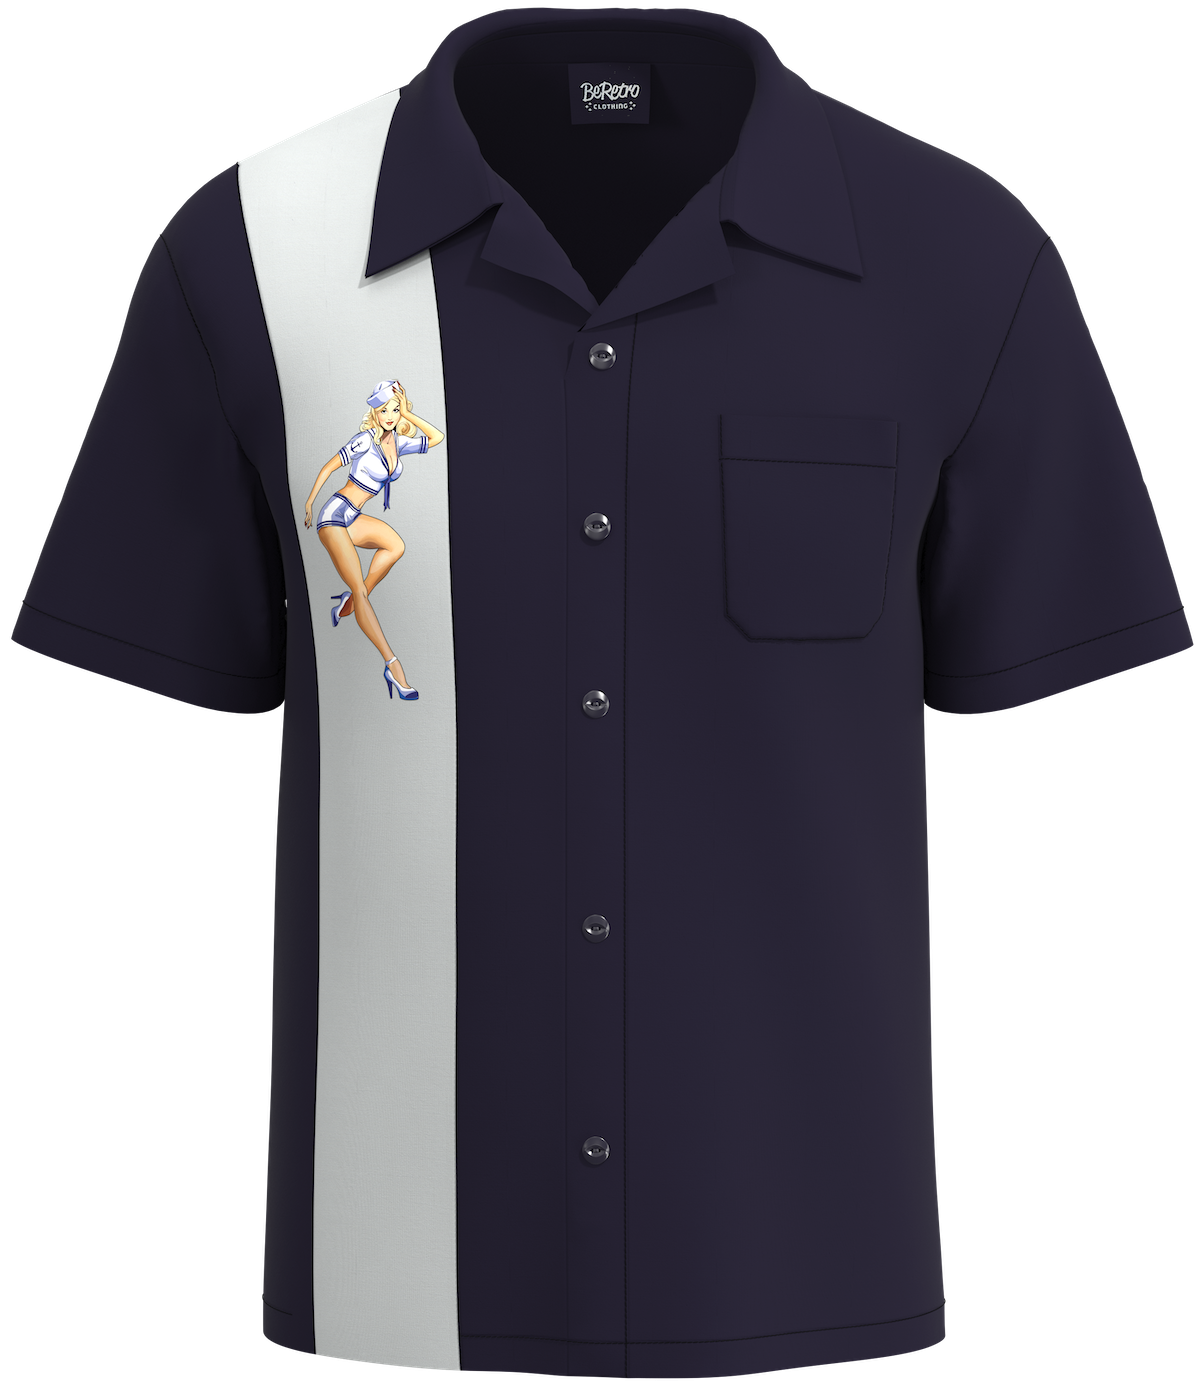 Jerry Sailor Inspired Navy Inspired Pin Up Shirt | Sailor Shirt